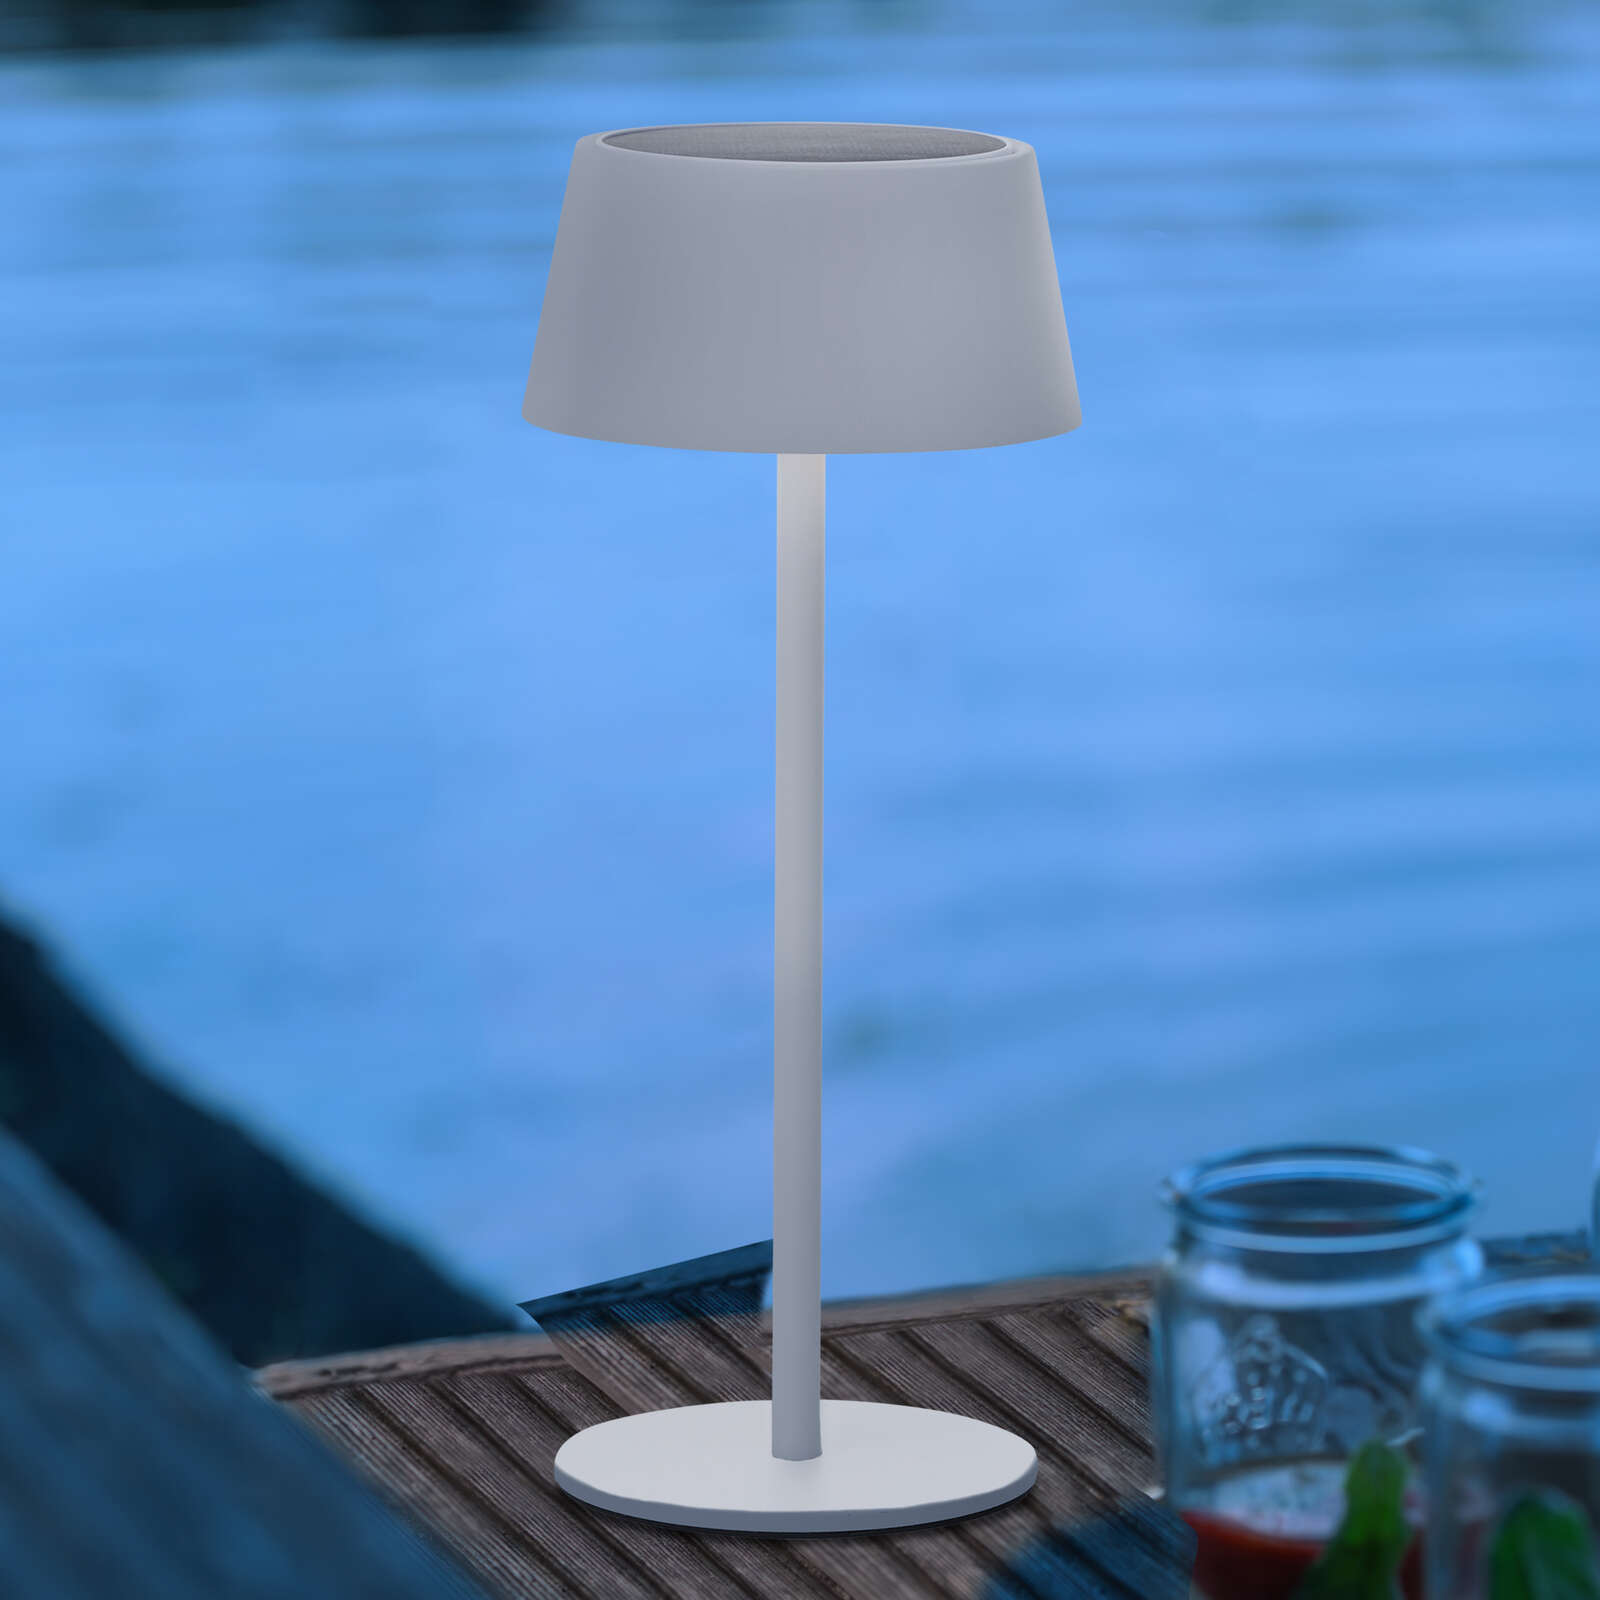             Lampada da tavolo in metallo - Outy 1 - Bianco
        